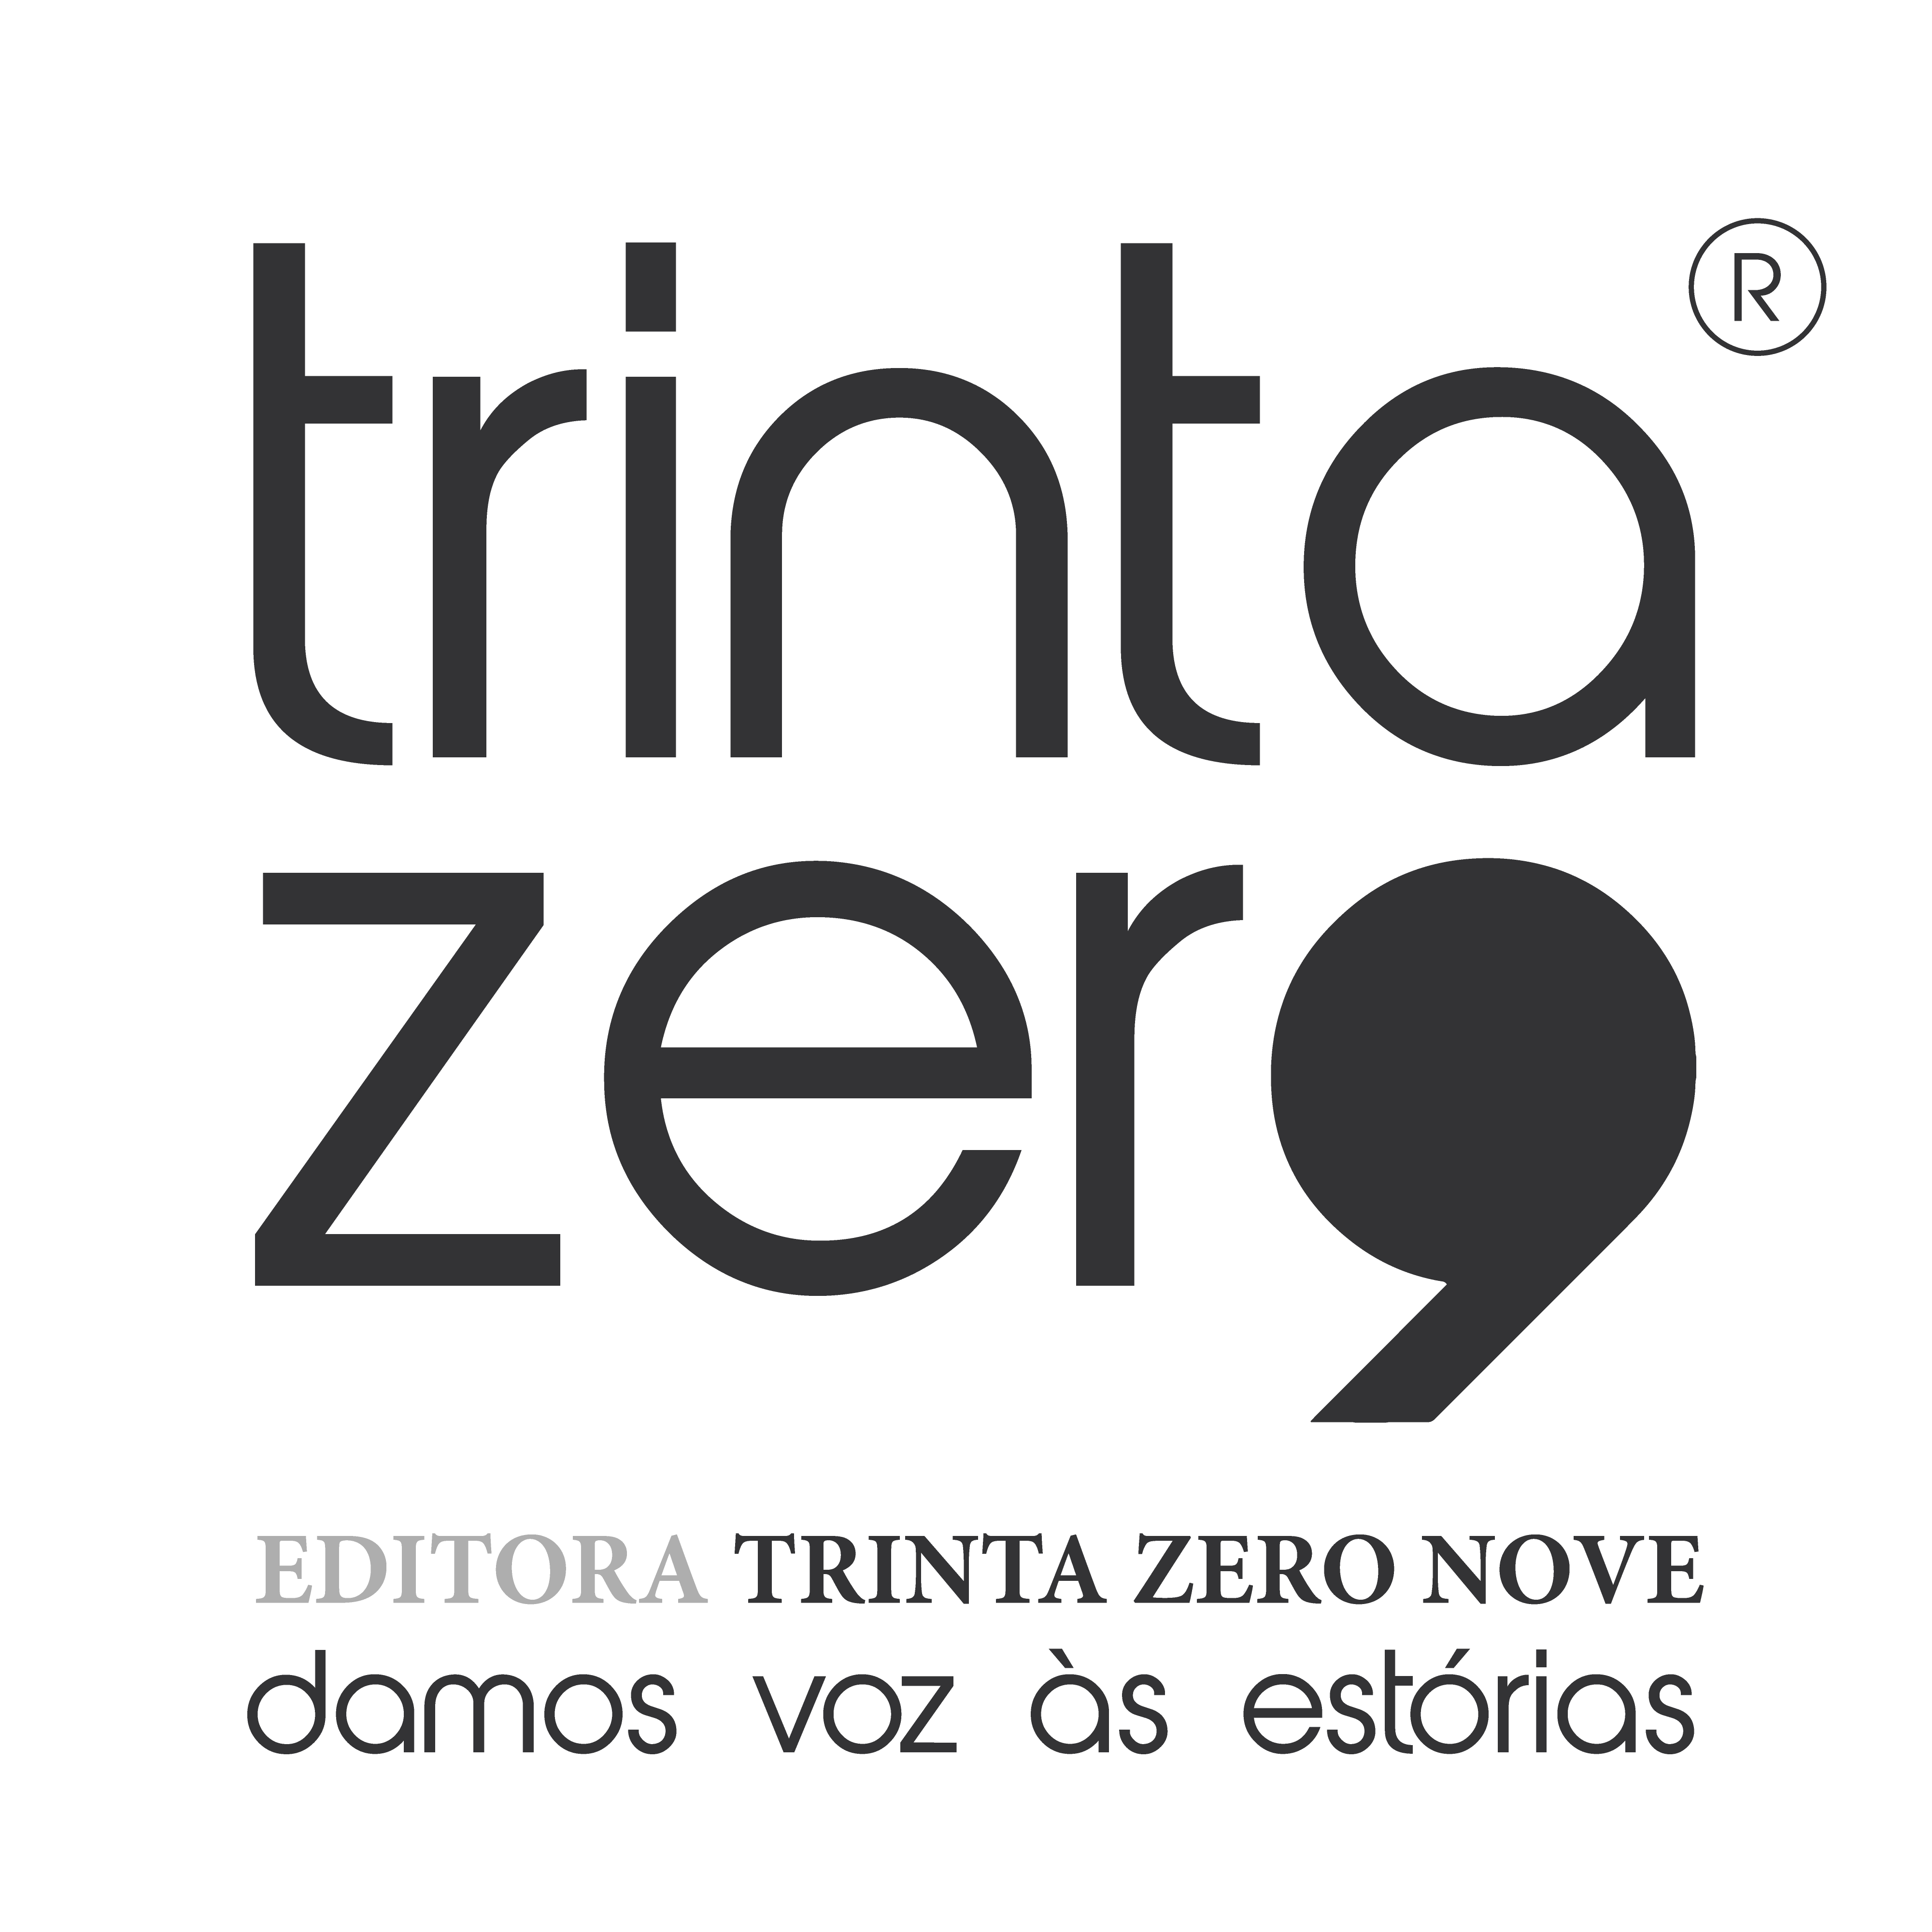 editora trinta zero nove logo